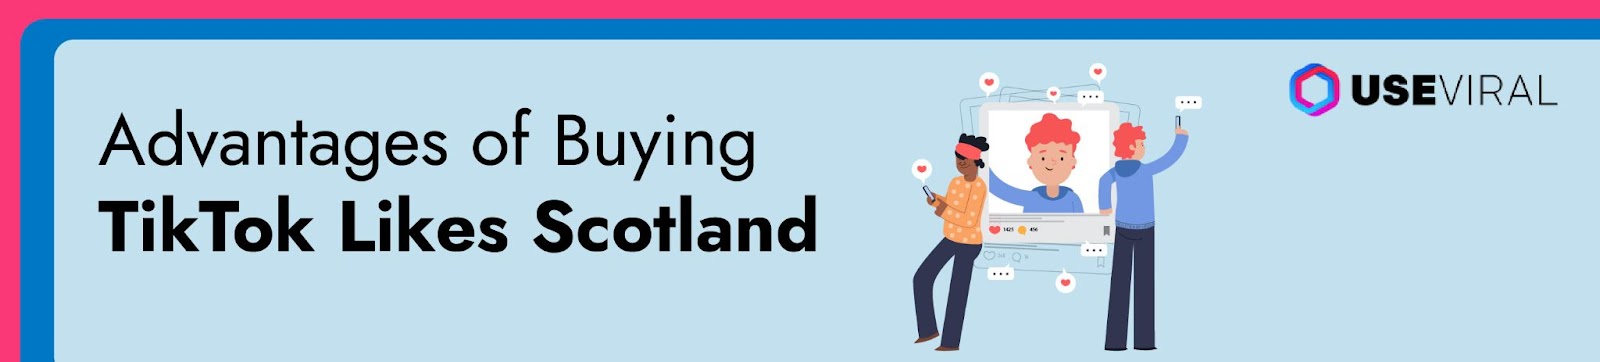 Advantages of buying TikTok likes Scotland